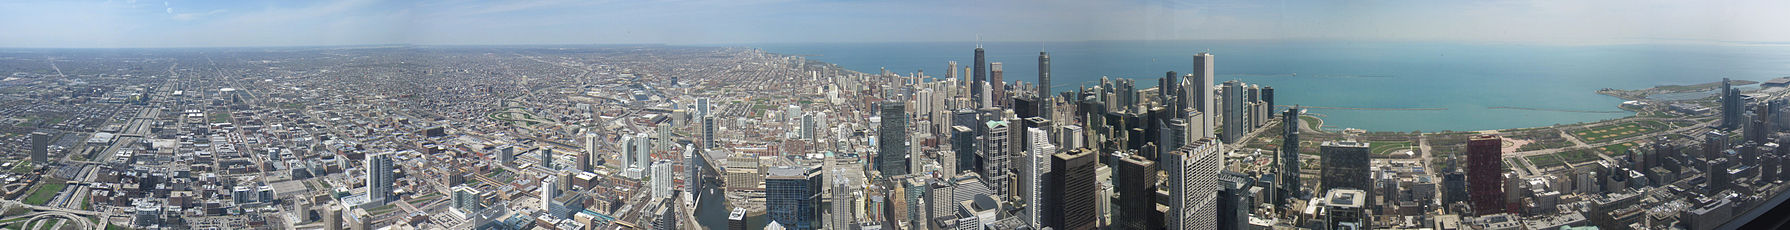 Vista de la gran región metropolitana de Chicago y el denso centro de la ciudad desde la Torre Willis